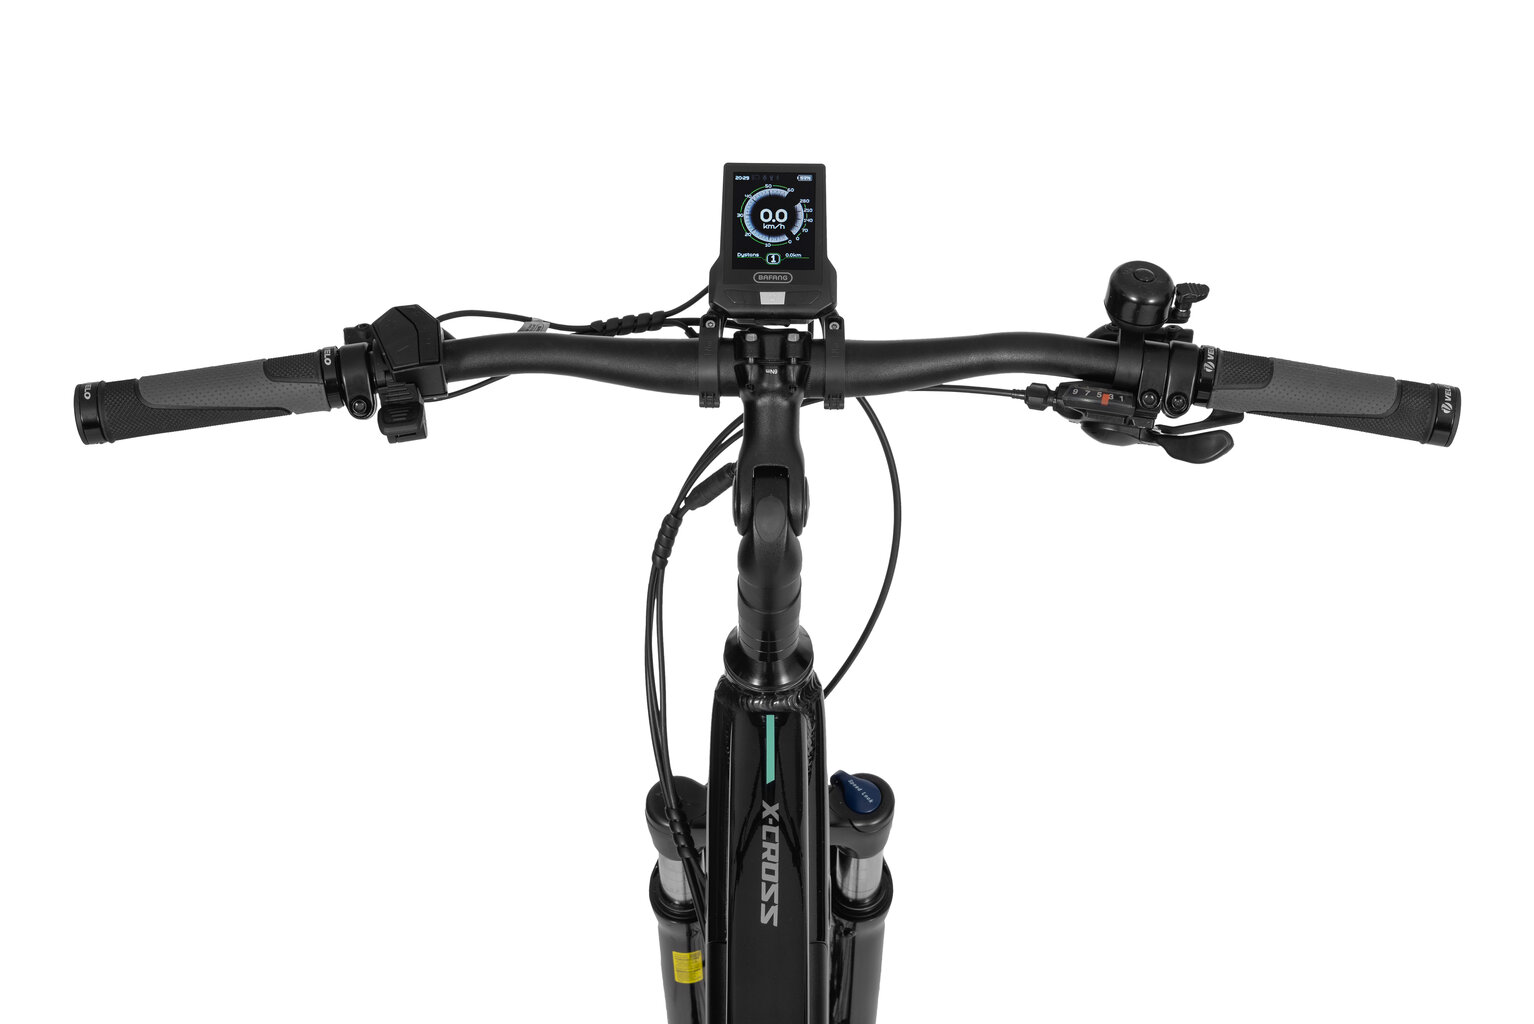 Elektrinis dviratis Ecobike X-Cross M 17,5 Ah LG, juodas kaina ir informacija | Elektriniai dviračiai | pigu.lt